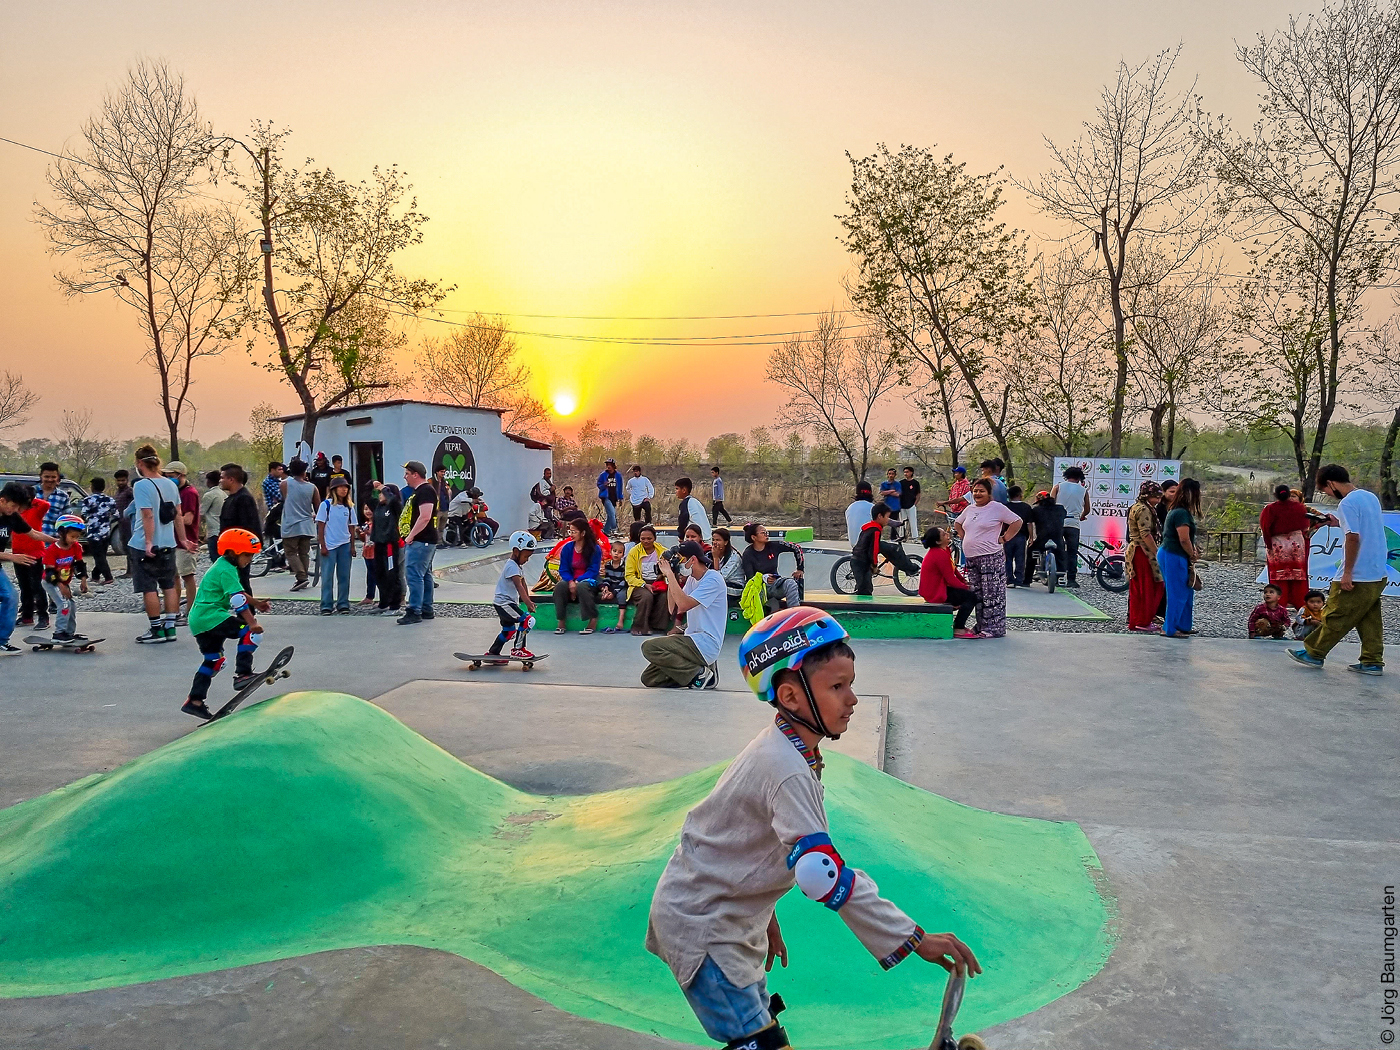 Das Foto zeigt einen Jungen mit einem bunten Schutzhelm auf einem Skatepark, sowie Publikum